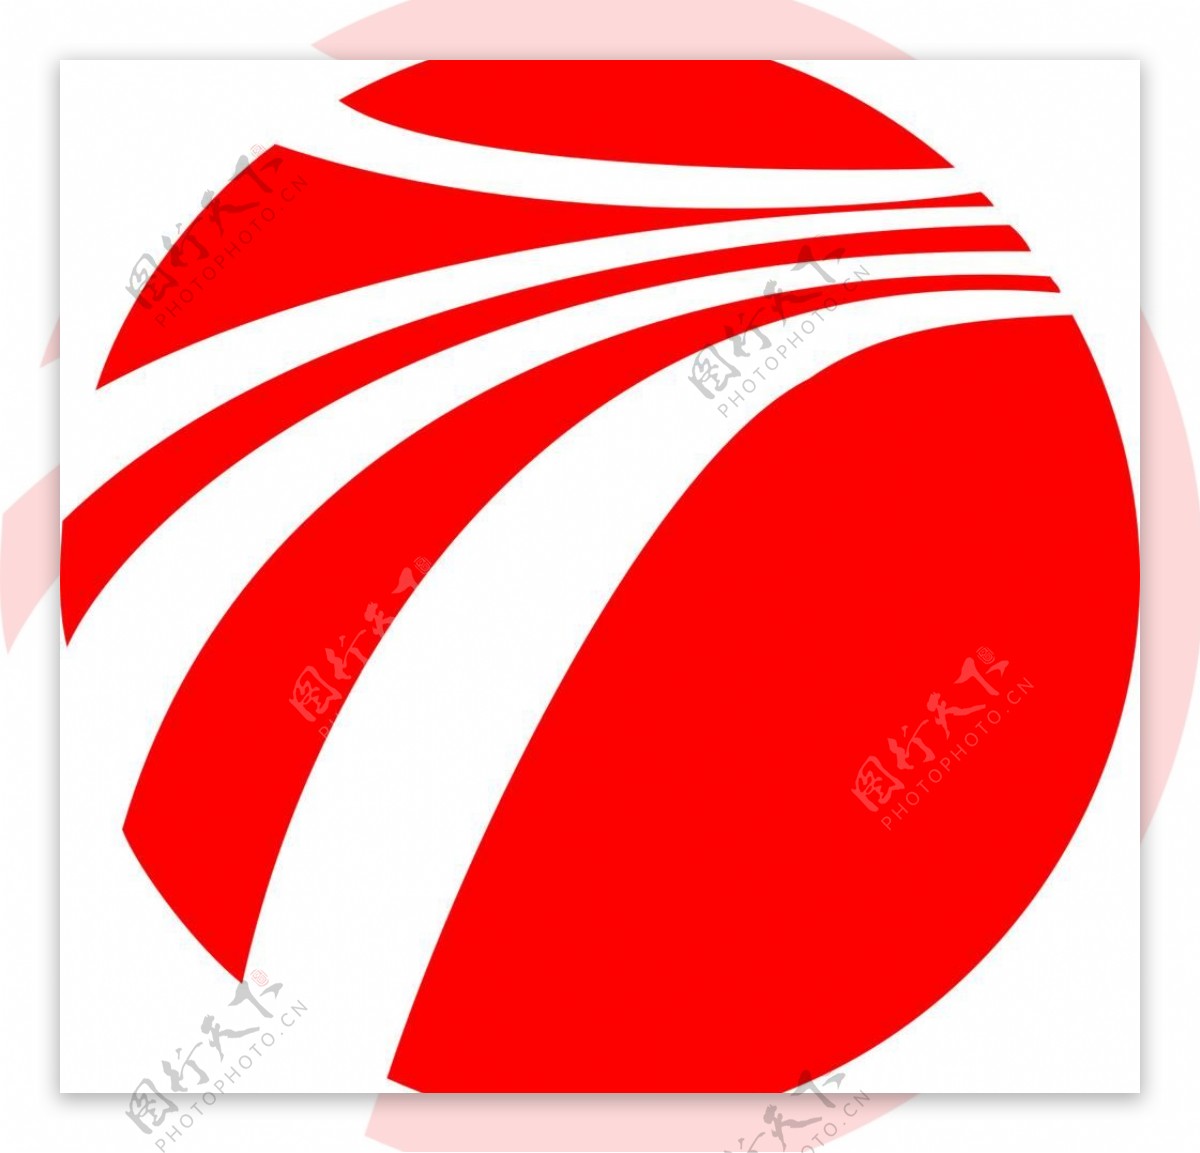 道贺高速公路logo图片